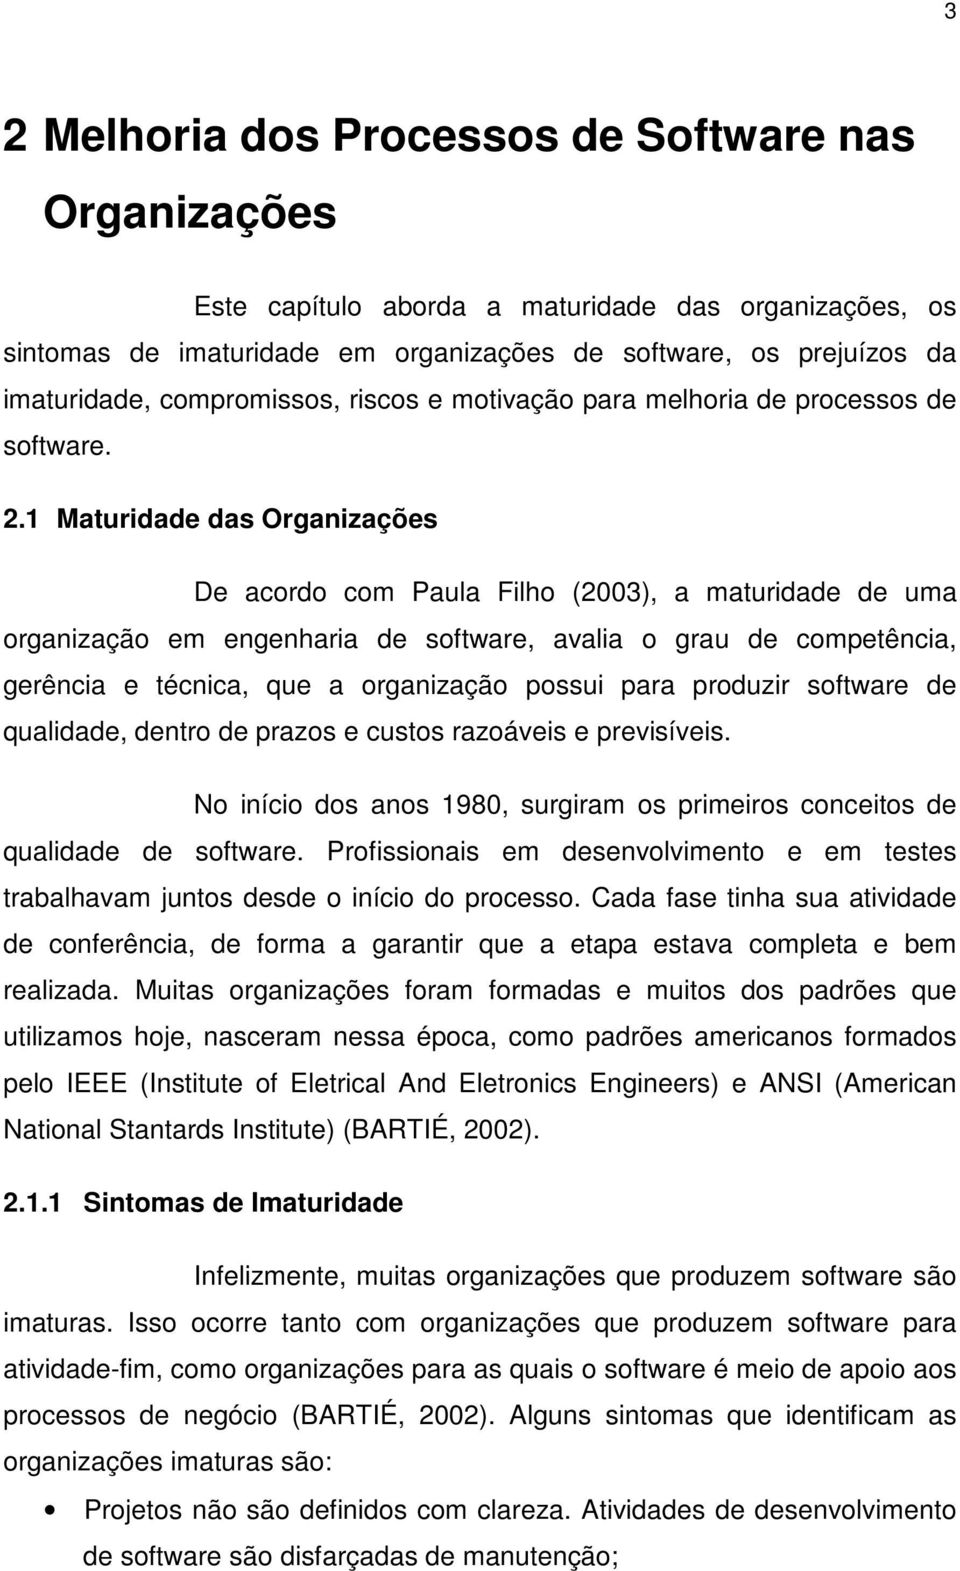 1 Maturidade das Organizações De acordo com Paula Filho (2003), a maturidade de uma organização em engenharia de software, avalia o grau de competência, gerência e técnica, que a organização possui